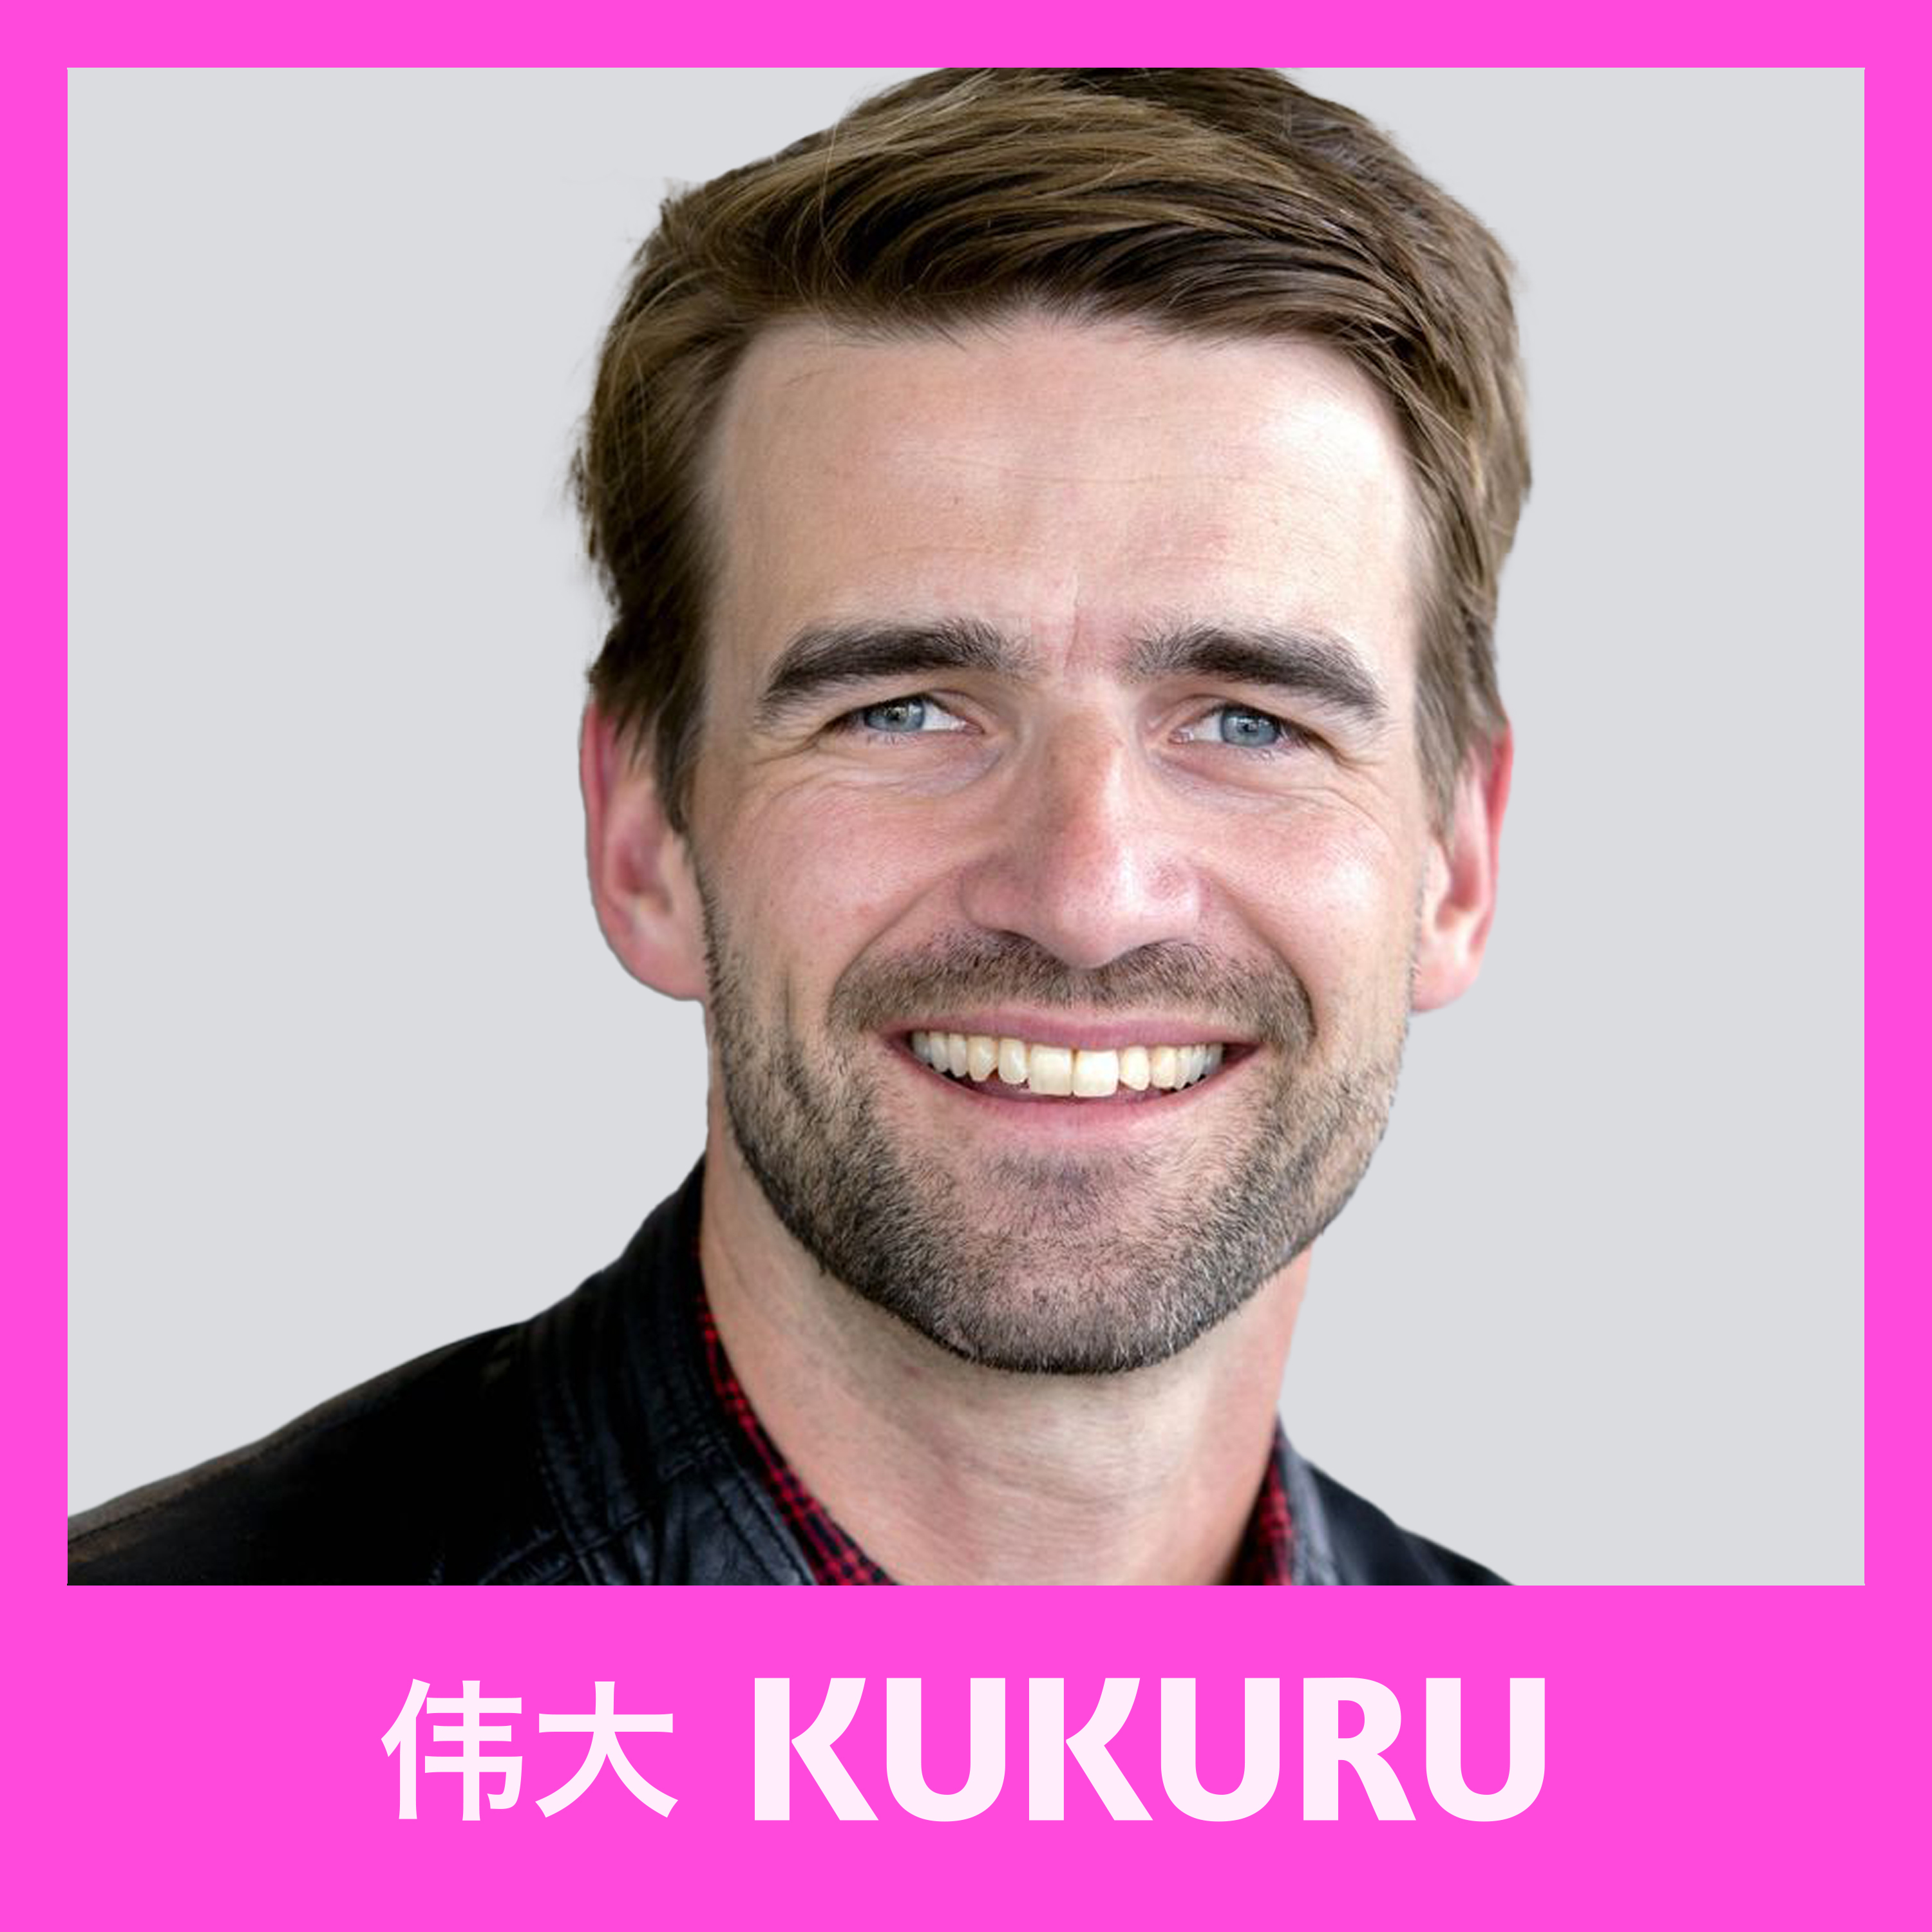 Mark Tuitert over schaatsen, loslaten, moed, falen en individuele/persoonlijke ontwikkeling | Kukuru #88